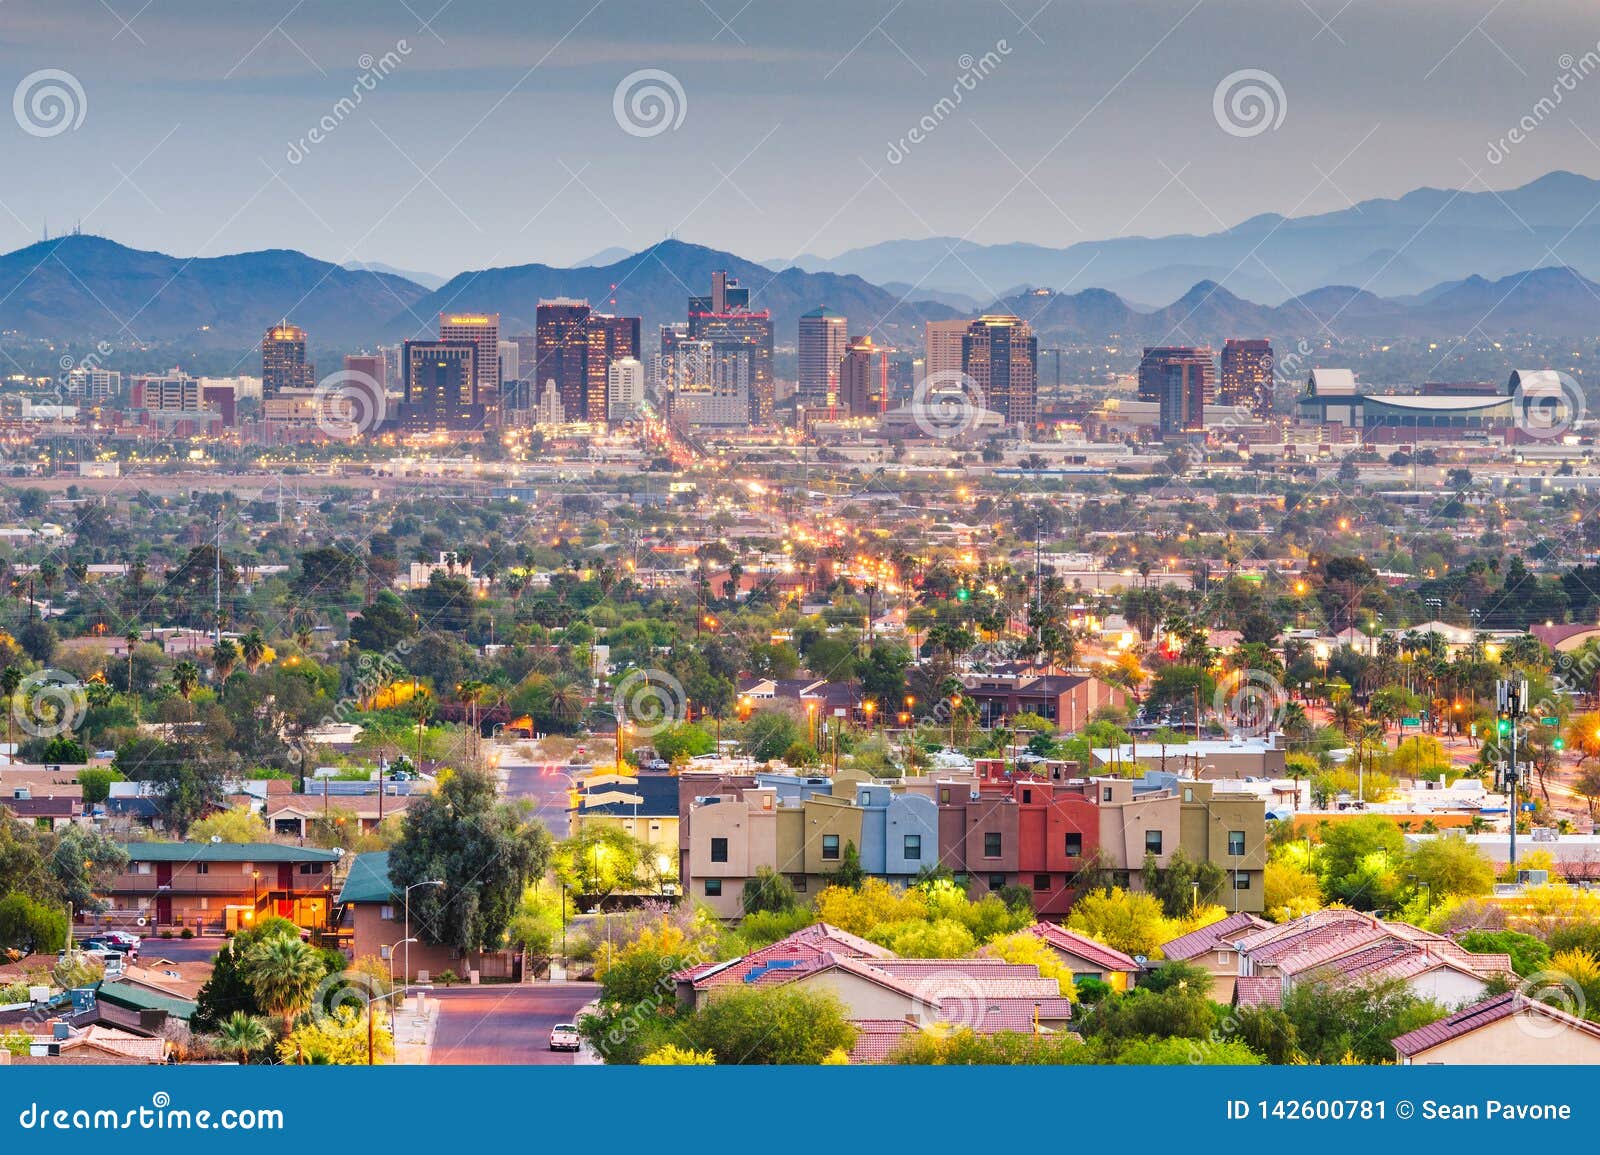 phoenix, arizona, usa downtown cityscape